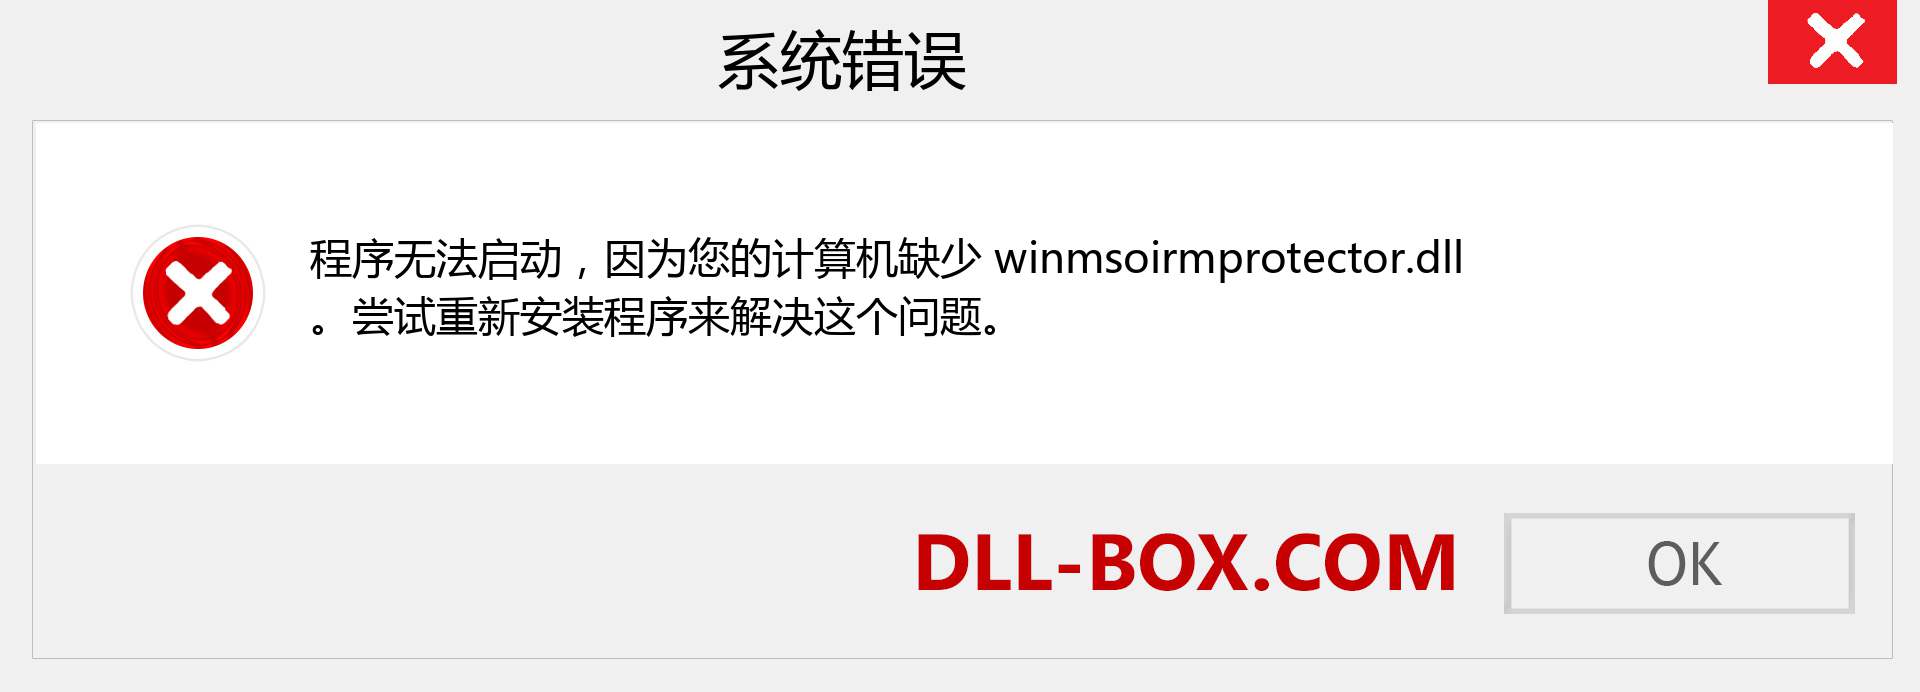 winmsoirmprotector.dll 文件丢失？。 适用于 Windows 7、8、10 的下载 - 修复 Windows、照片、图像上的 winmsoirmprotector dll 丢失错误